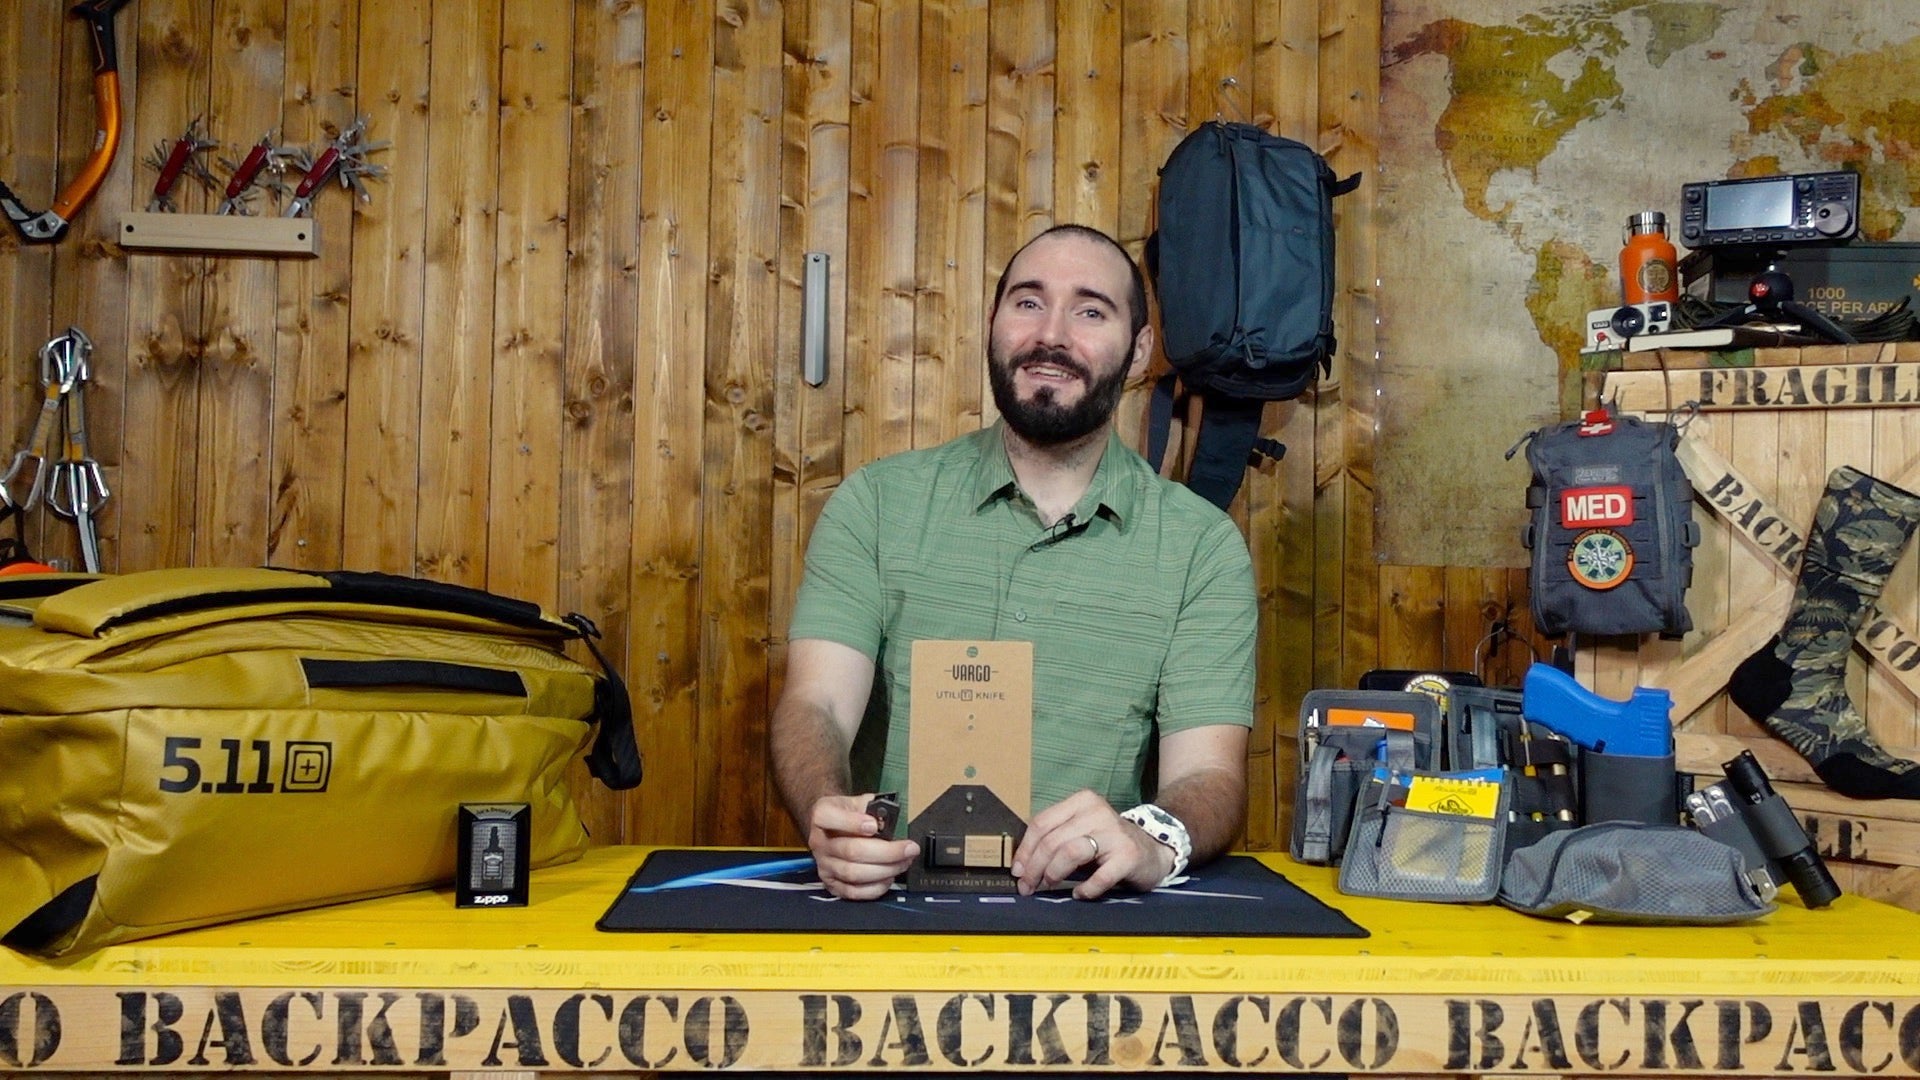 Paolo di Backpacco spiega l'utiliti knife di vargo